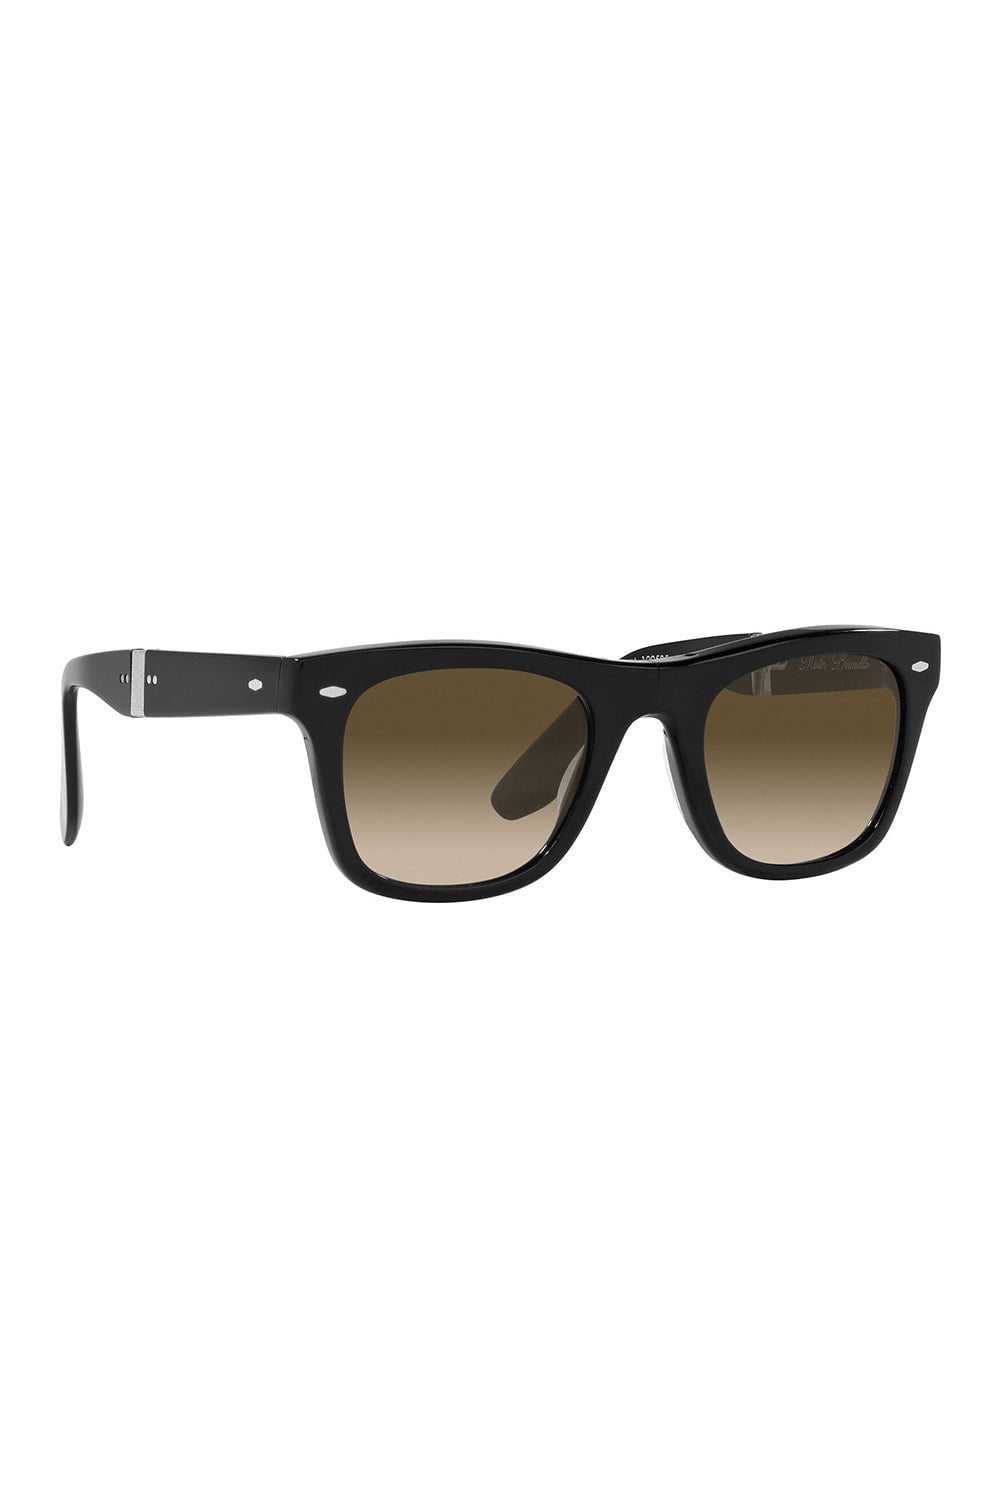 OLIVER PEOPLES-Mister Brunello Folding Sunglasses - Black Chrome Olive-BLACK\CHROME OLIVE PHOTOCROMIC